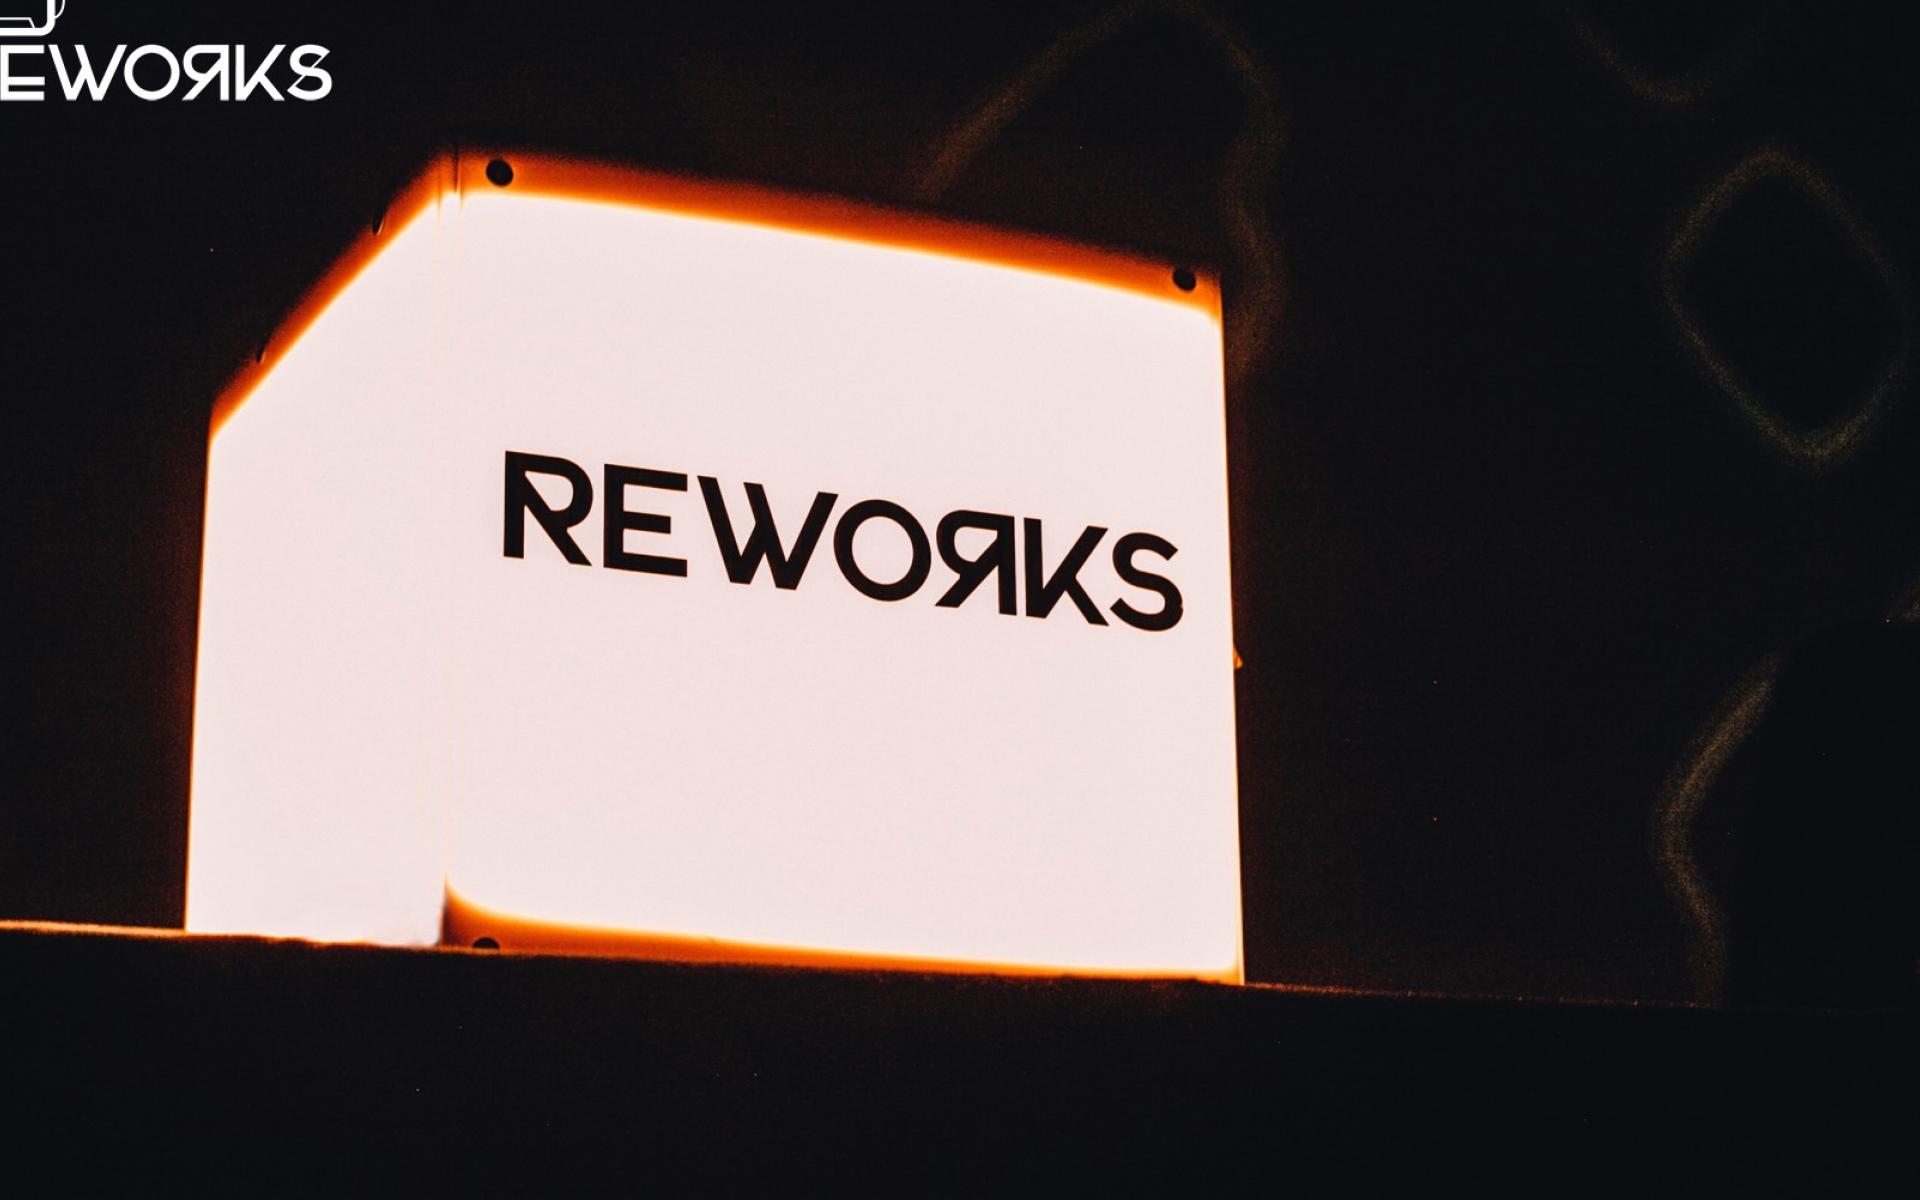 Reworks Festival 2016